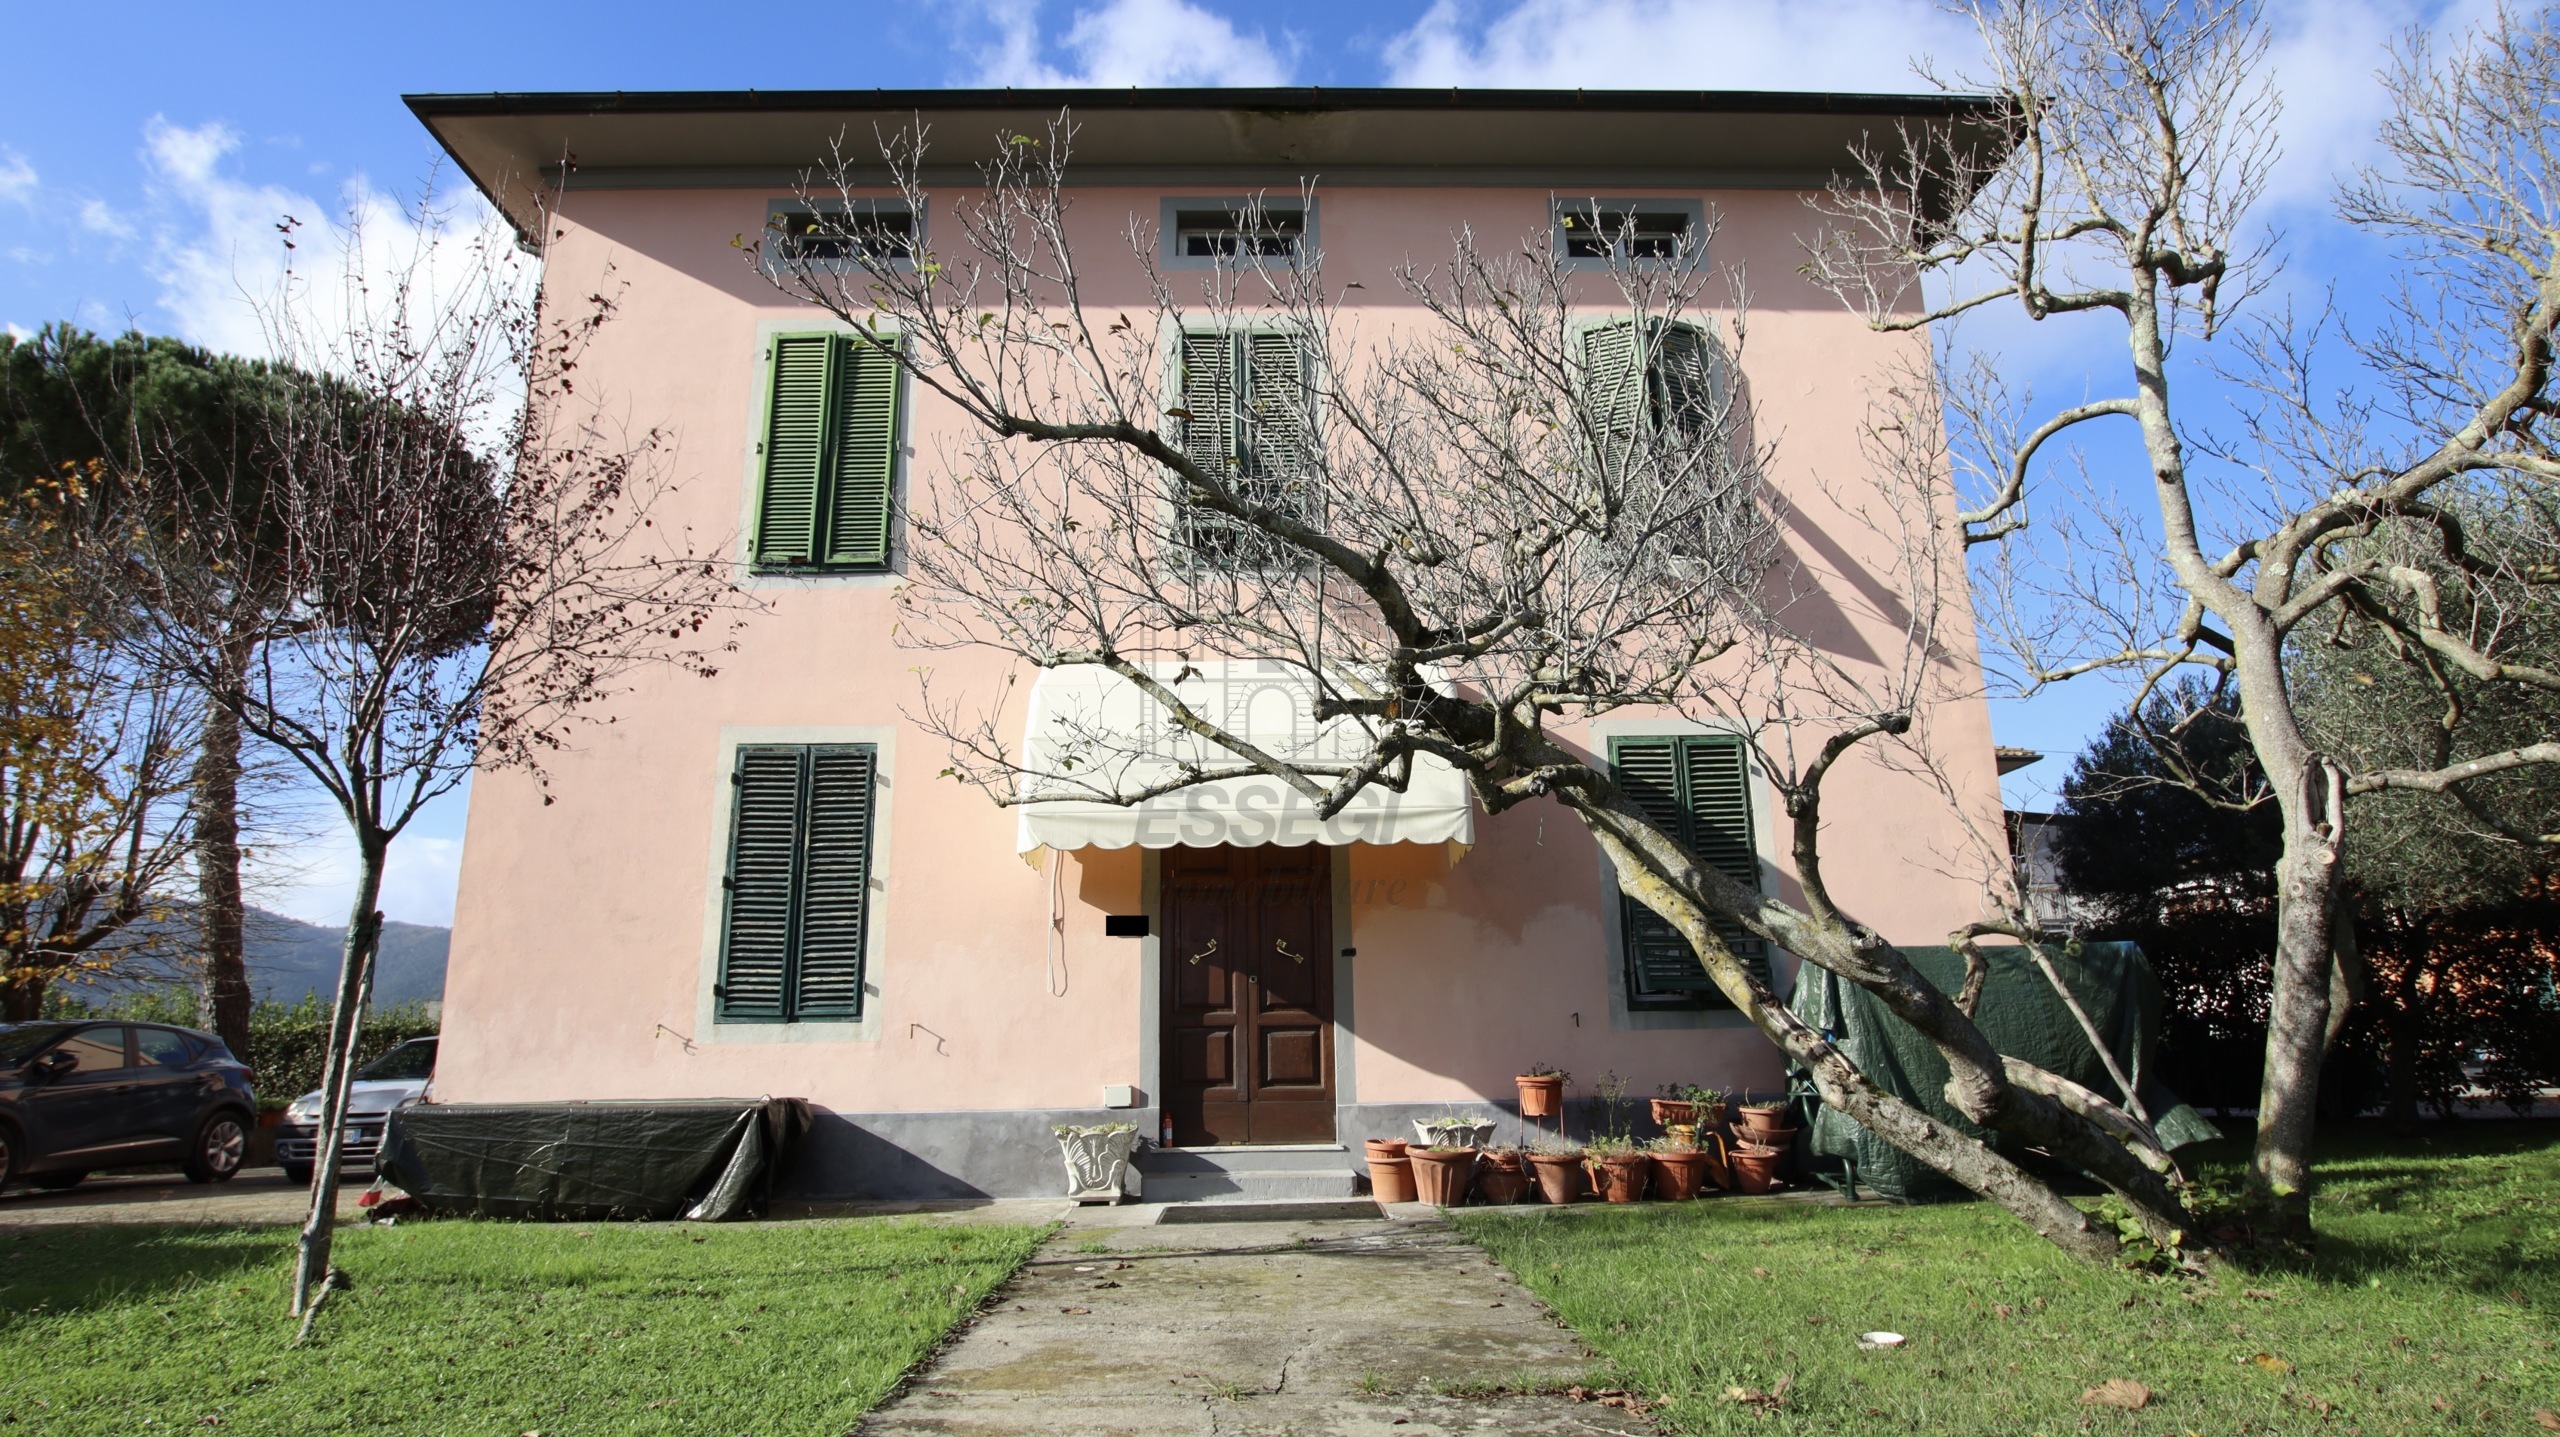 Villa con giardino in via di vitricaia sorbano del giudice 241, Lucca